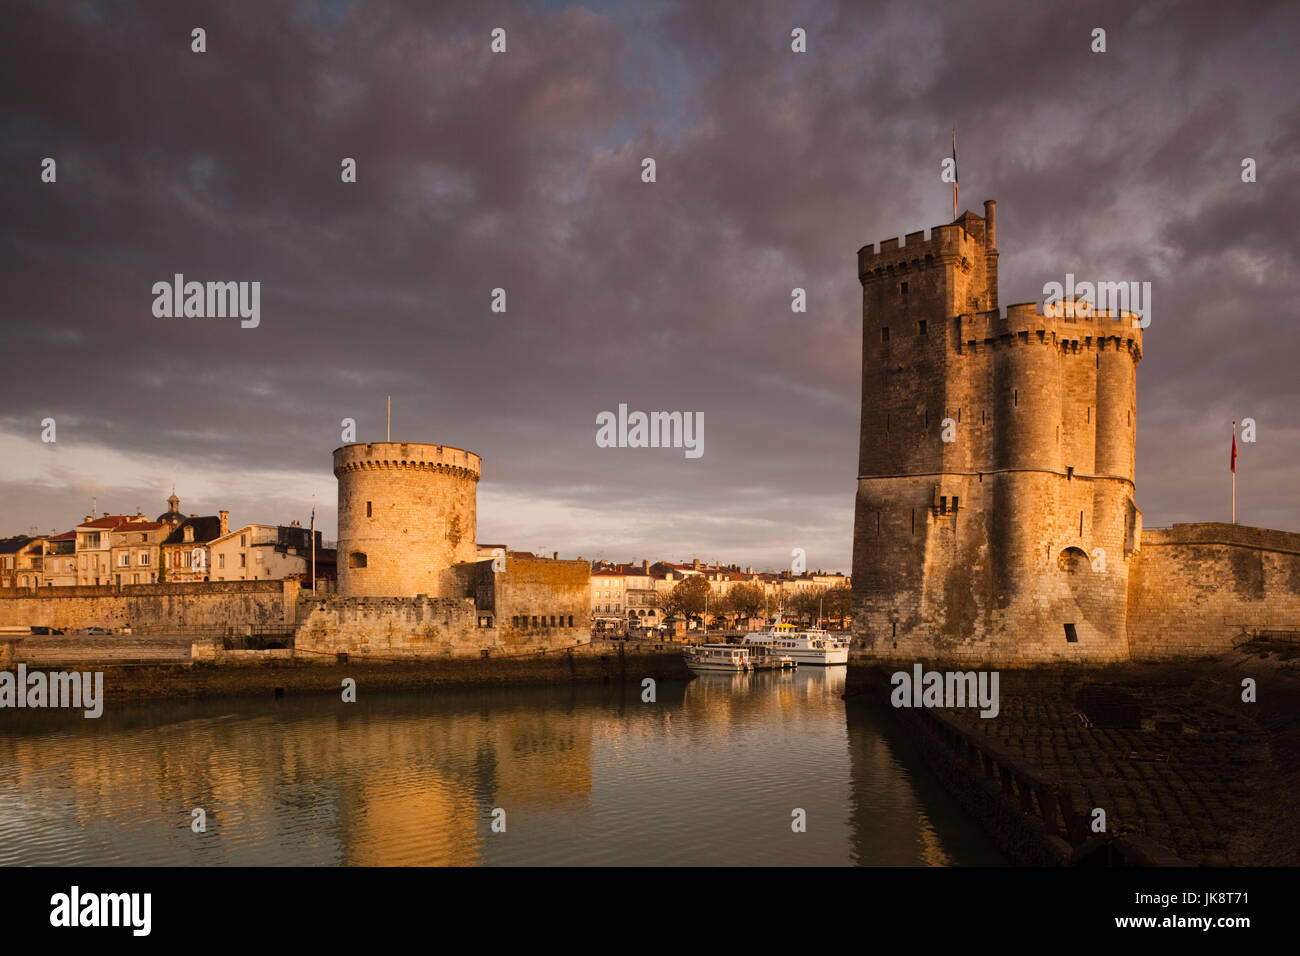 France, Poitou-Charentes Region, Charente-Maritime Department, La Rochelle,Old Port, Tour de la Chaine and Tour St-Nicholas towers, dawn Stock Photo